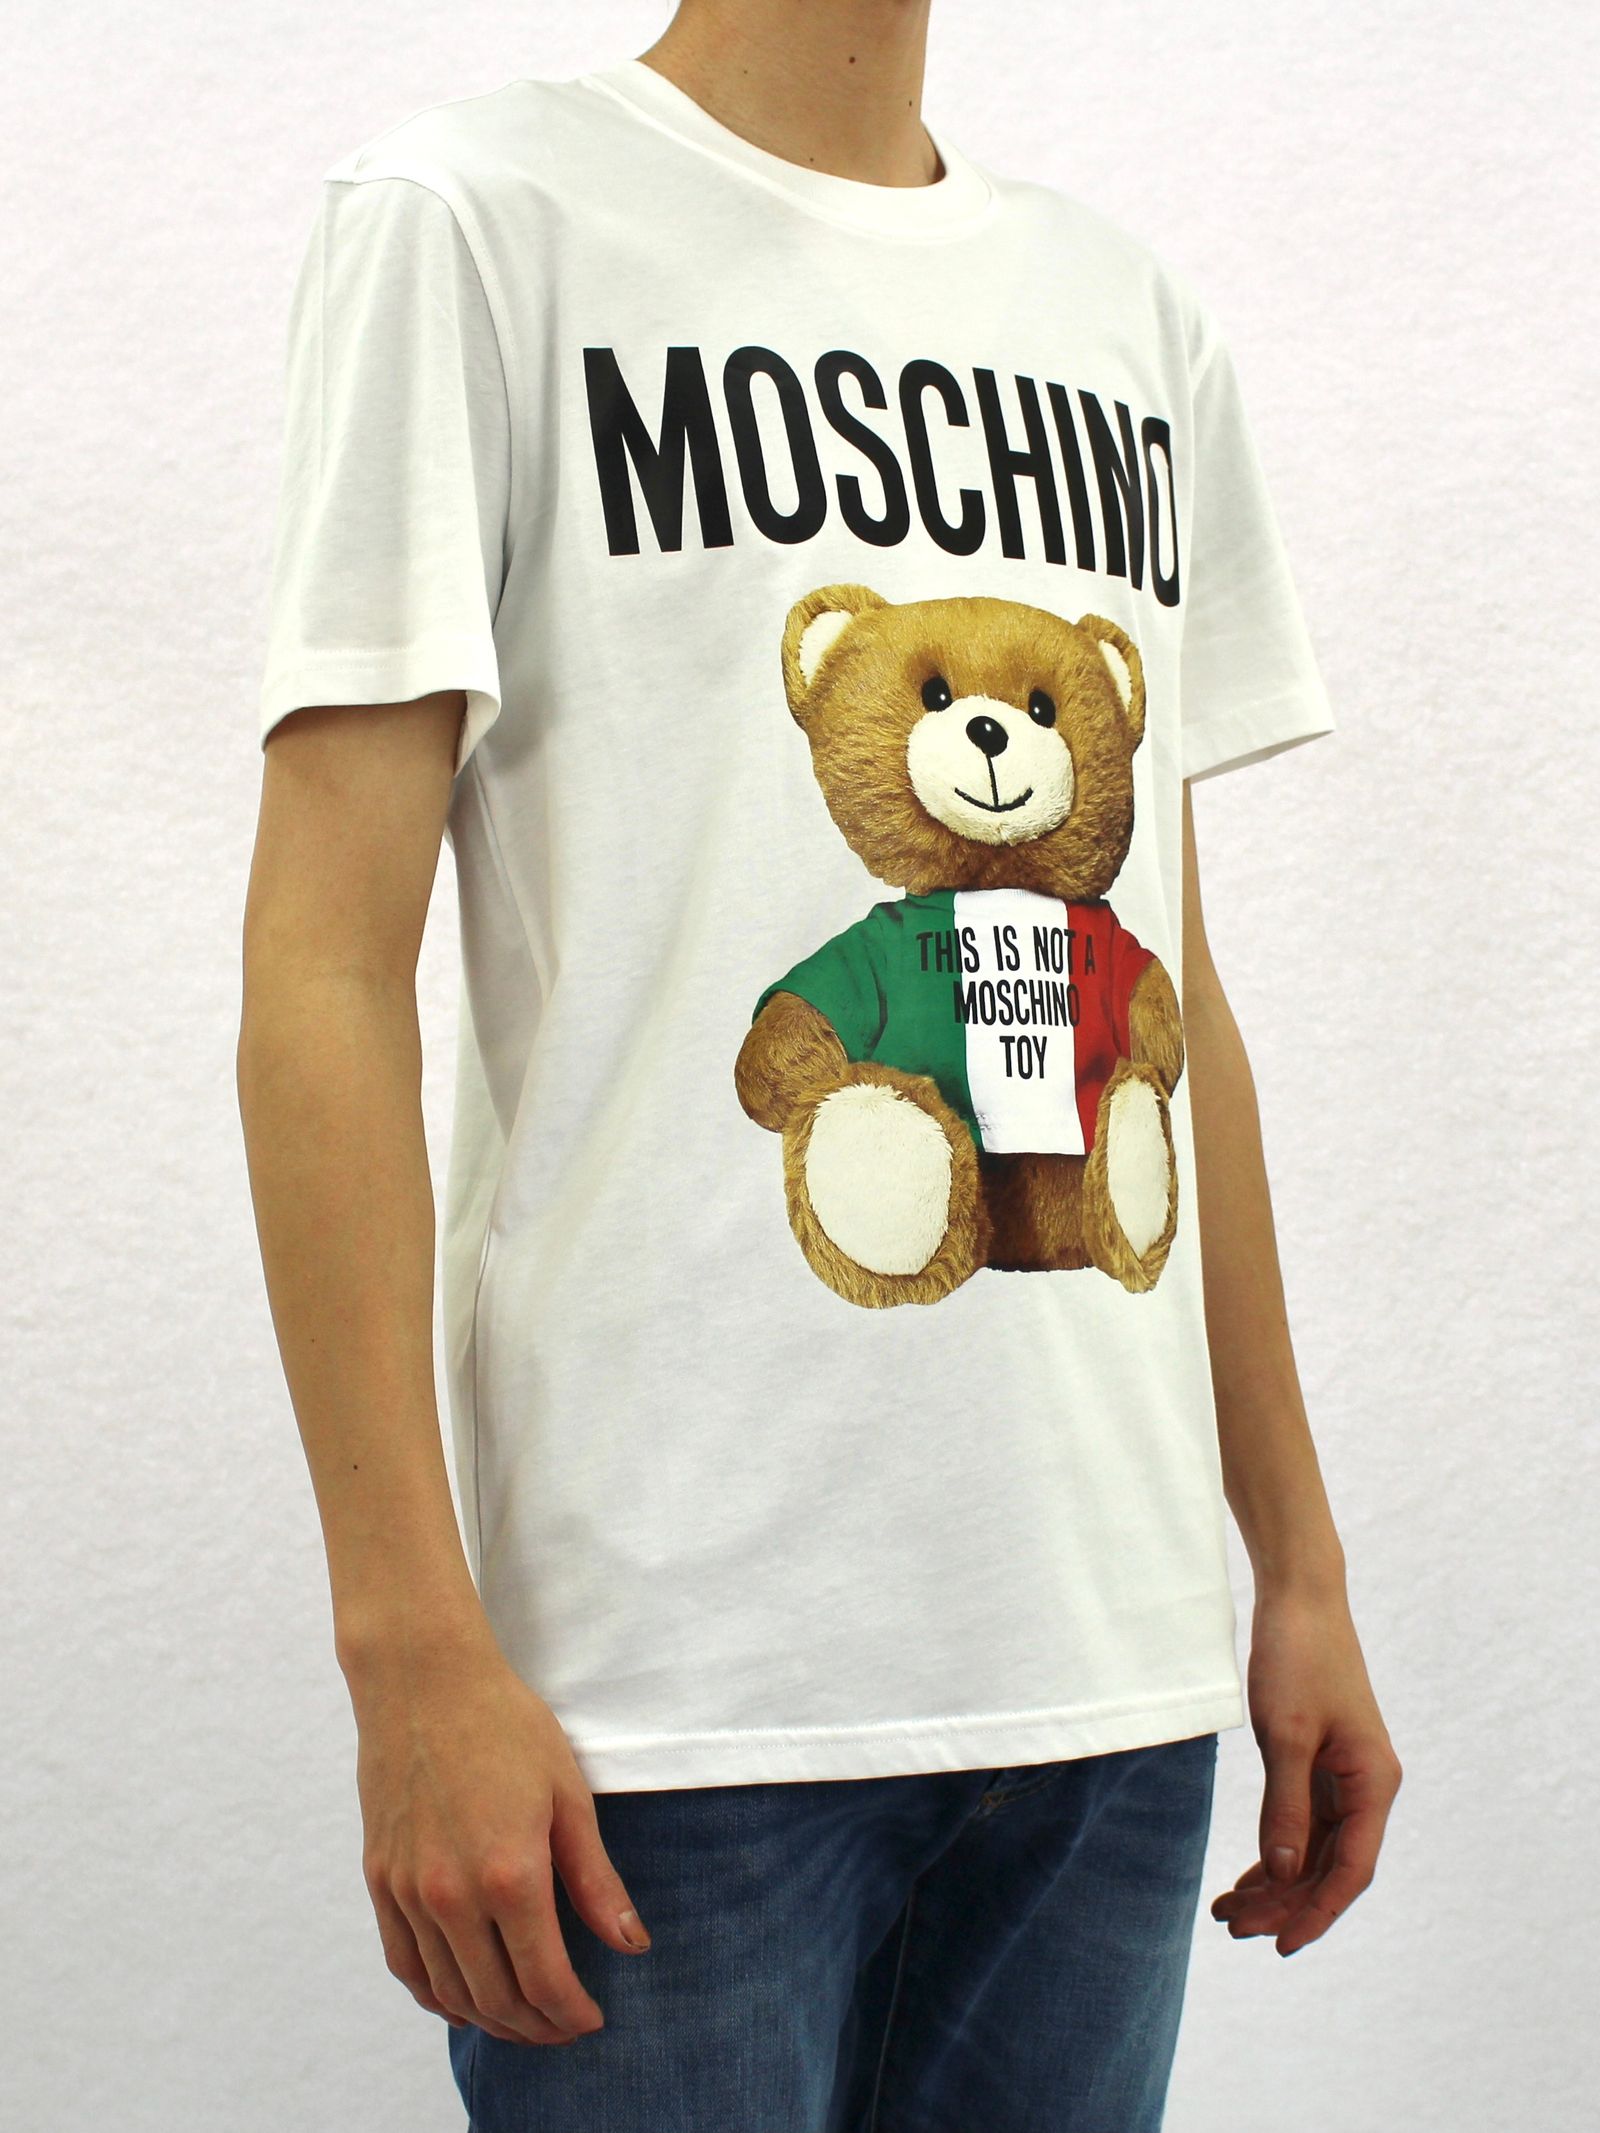 オーバーサイズ イタリアン ベアプリントTシャツ / OVER SIZED T-SHIRT ITALIAN TEDDY BEAR / ホワイト ×  マルチ - ホワイト - 46(XS)